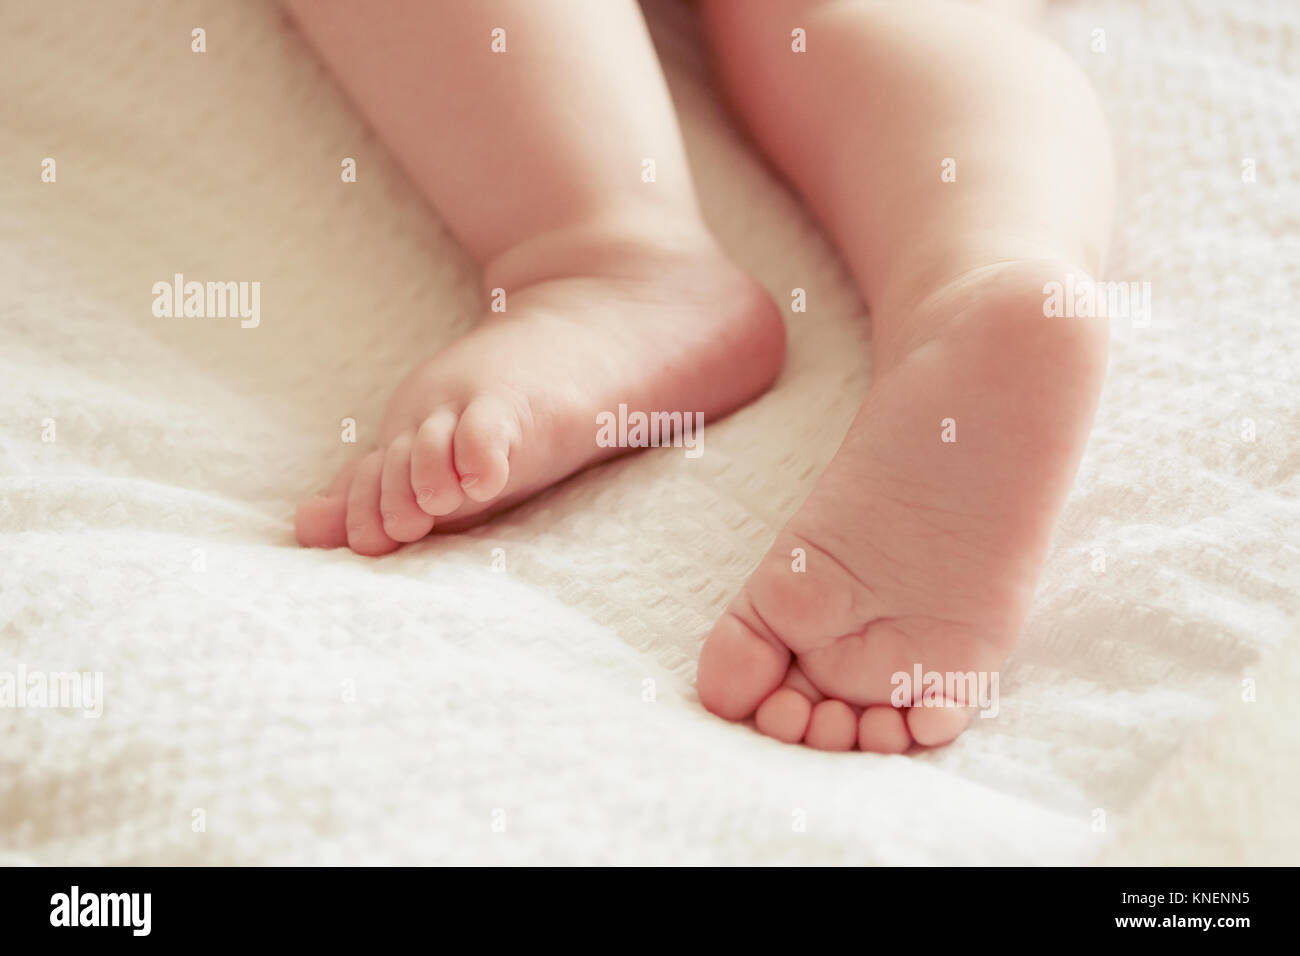 Les pieds de bébé garçon, close-up Banque D'Images